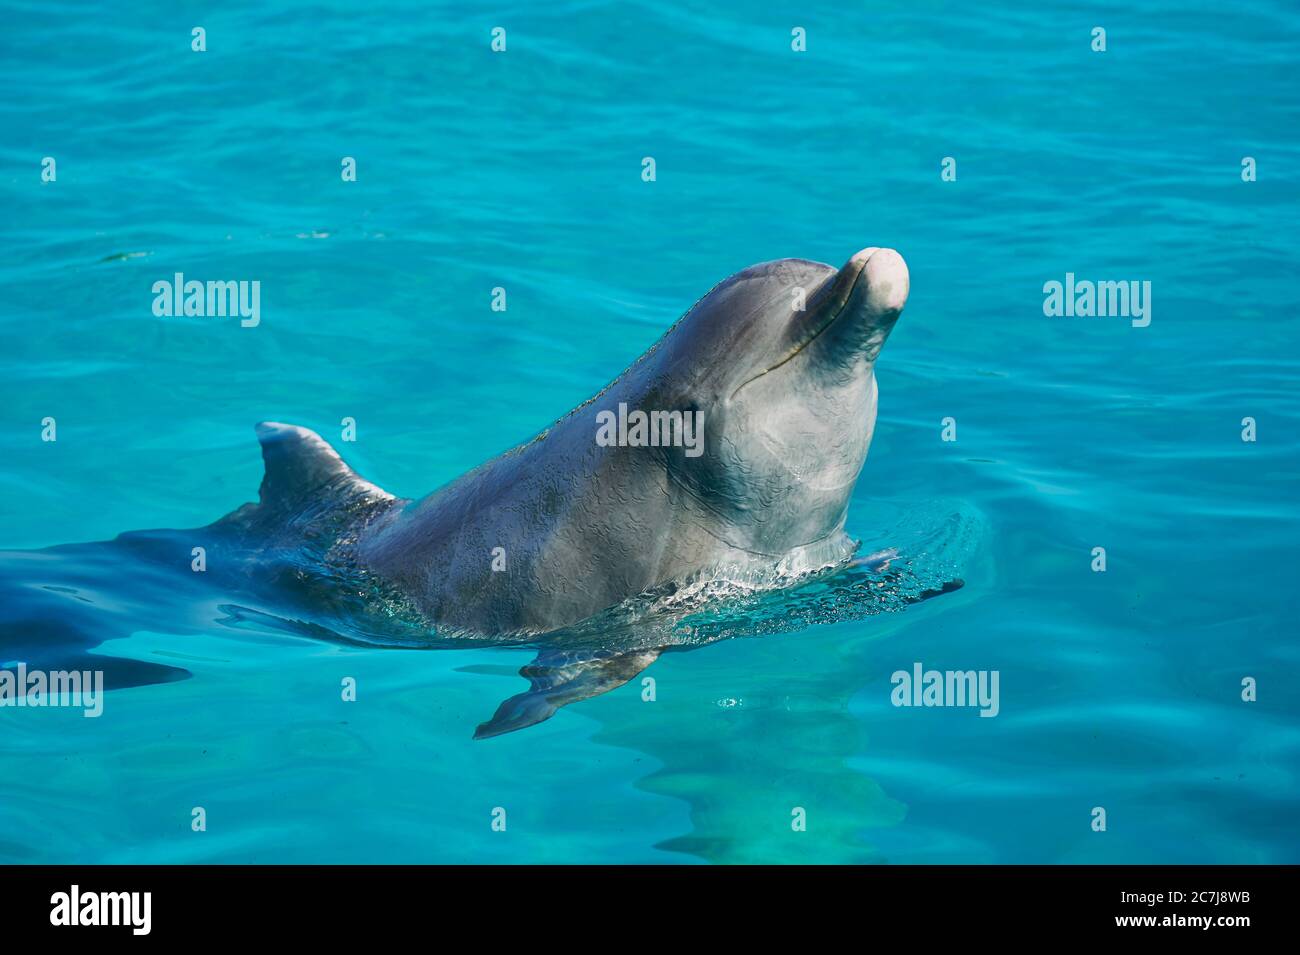 Dauphin à nez en bouteille, dauphin à nez en bouteille (Tursiops truncatus), nage dans un dauphinarium, vue latérale Banque D'Images